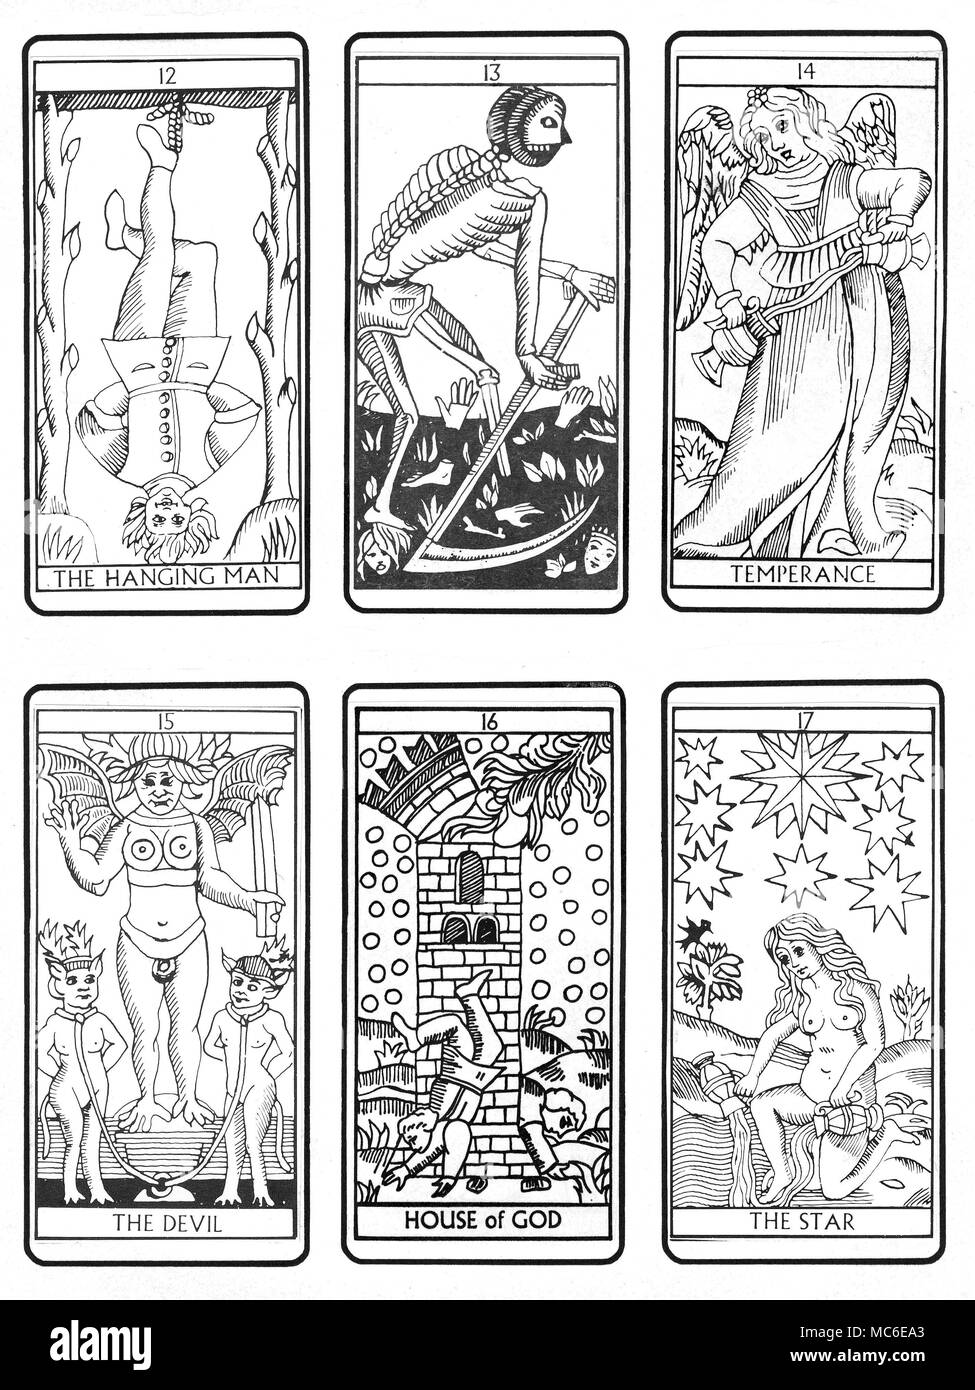 TAROT KARTEN - MARSEILLE DECK Die dritte sechs der Sequenz von 22 Tarot Karten (entsprechend der traditionellen Marseille design), aus dem zwölften Karte (Der Hängende Mann), durch die Death Card, Mäßigkeit, der Teufel, das Haus Gottes und die Sterne. Die verbleibenden Sequenzen sind verfügbar, in den Reihen des 6. Stockfoto